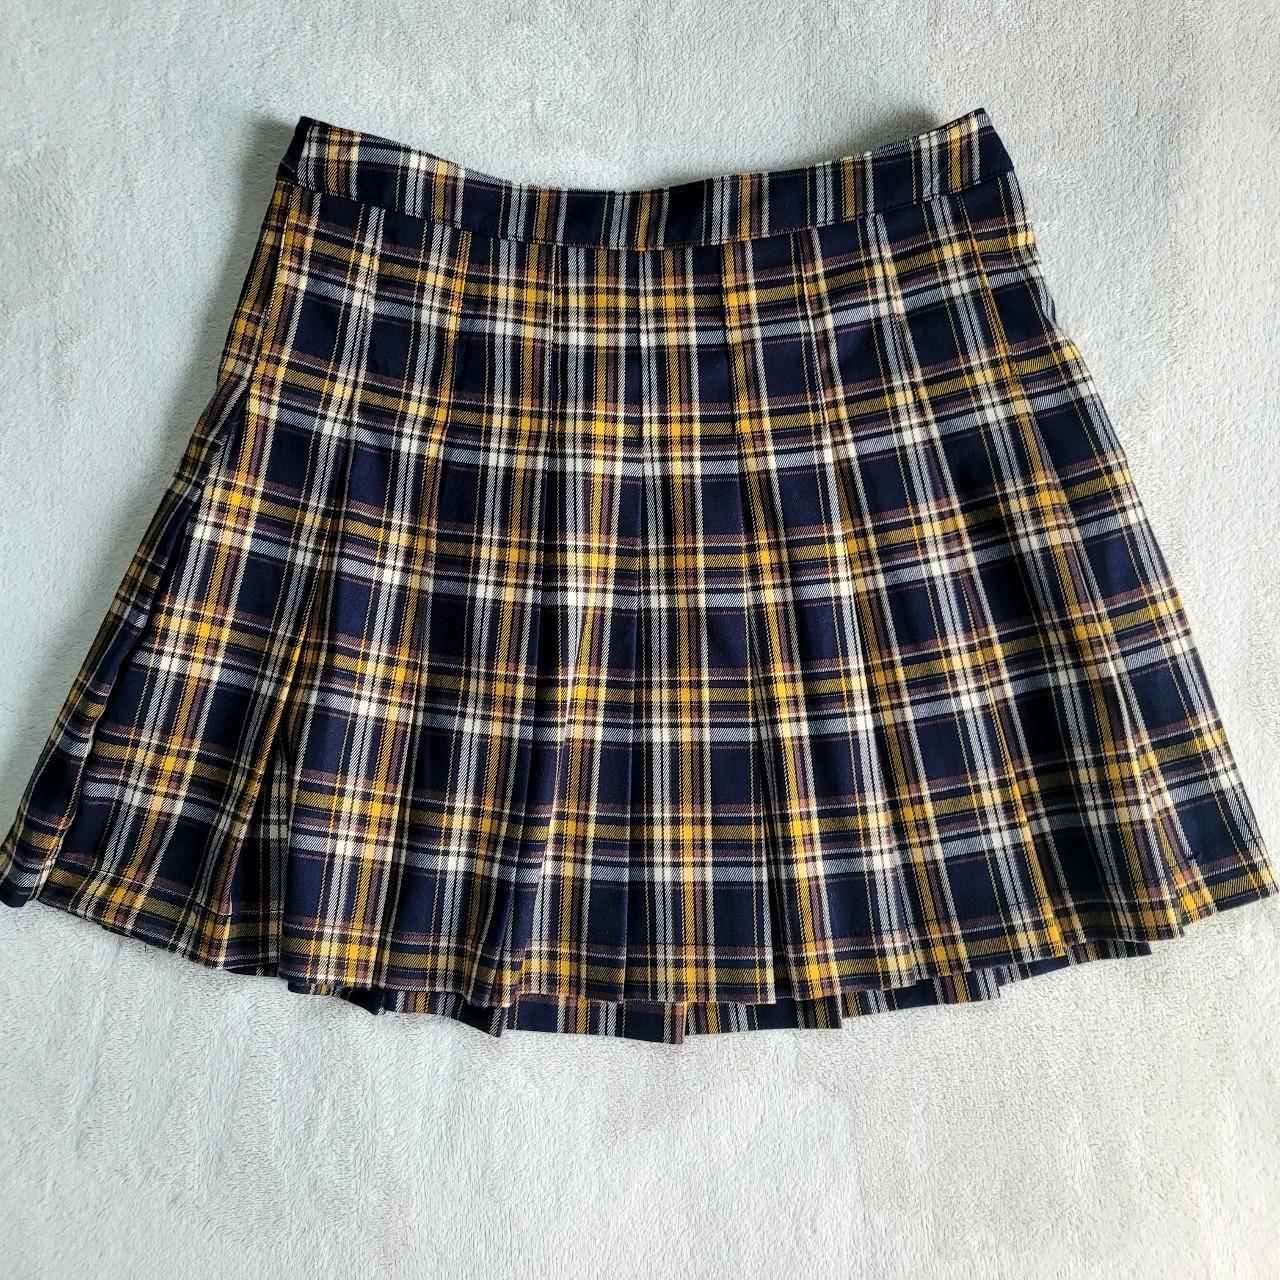 Forever 21 plaid mini skirt. Schoolgirl style. Side... - Depop